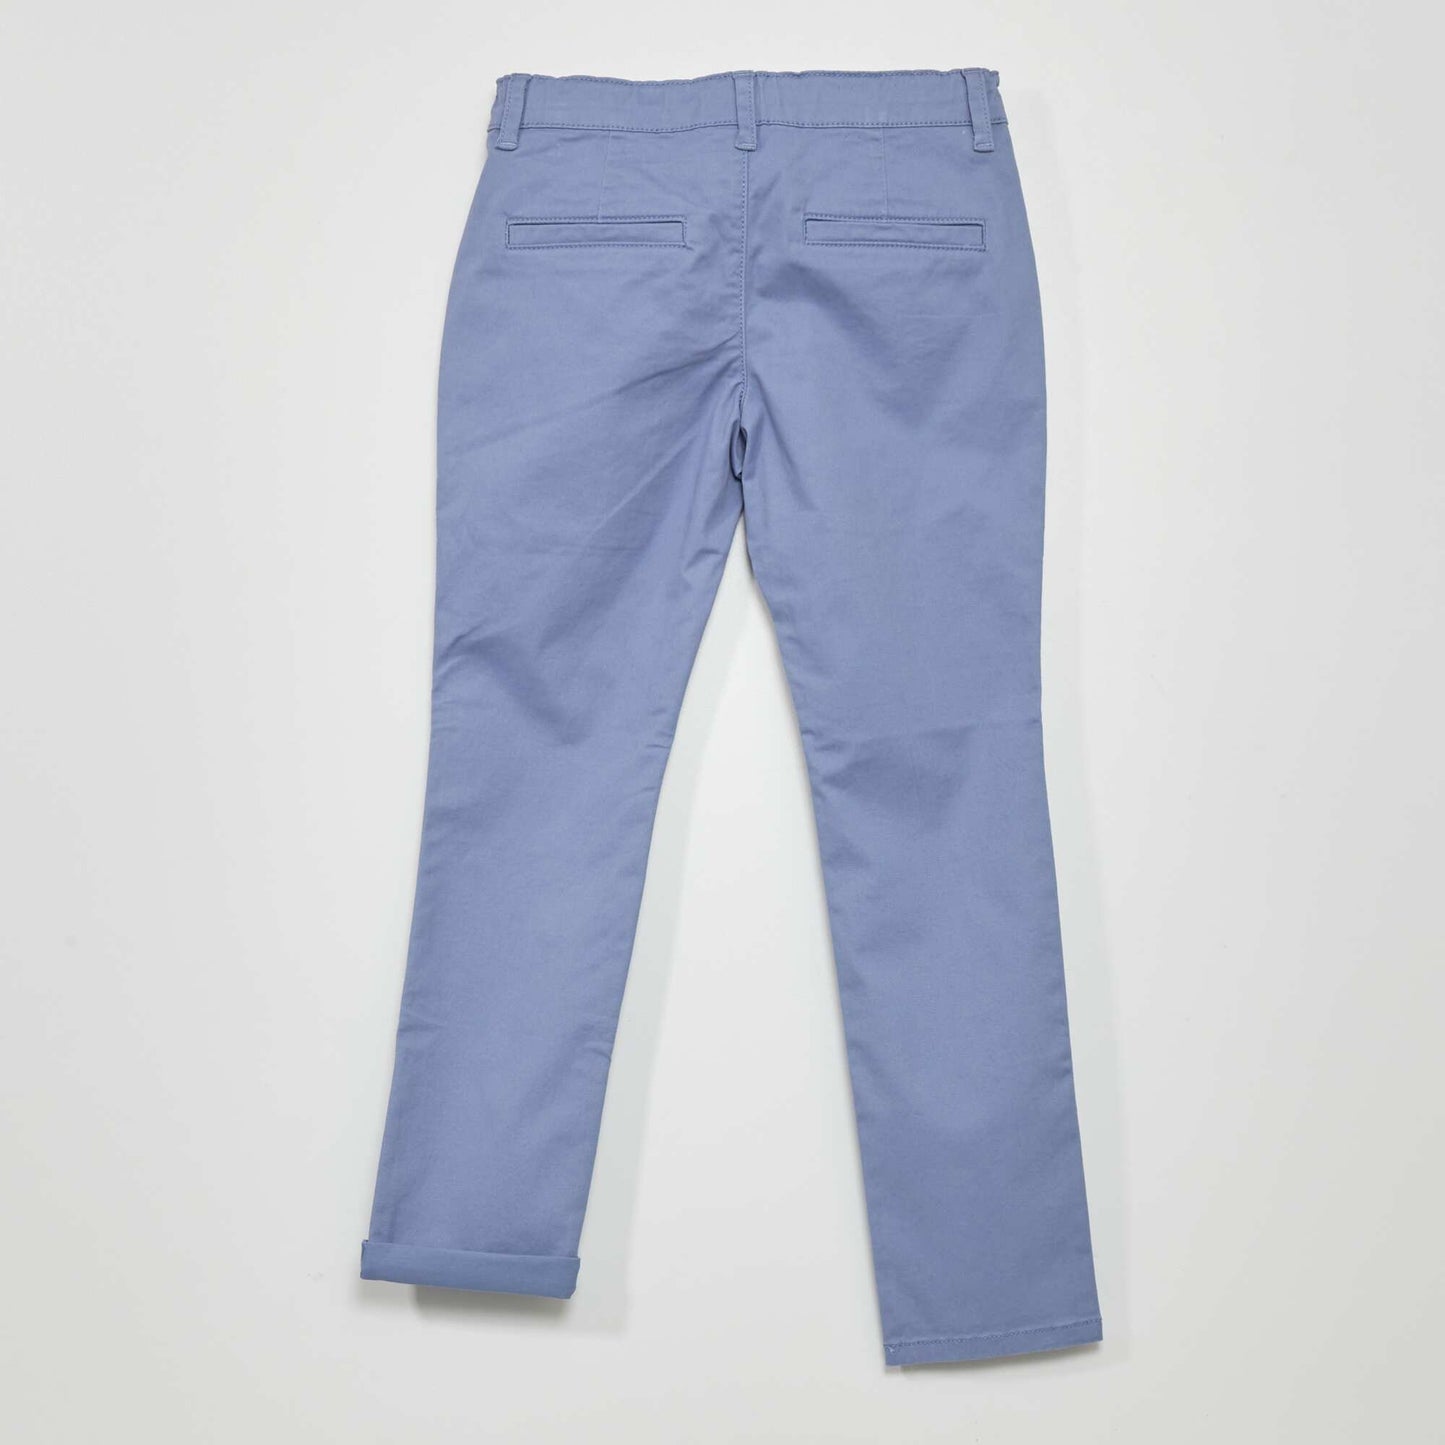 Pantalon chino bleu gris